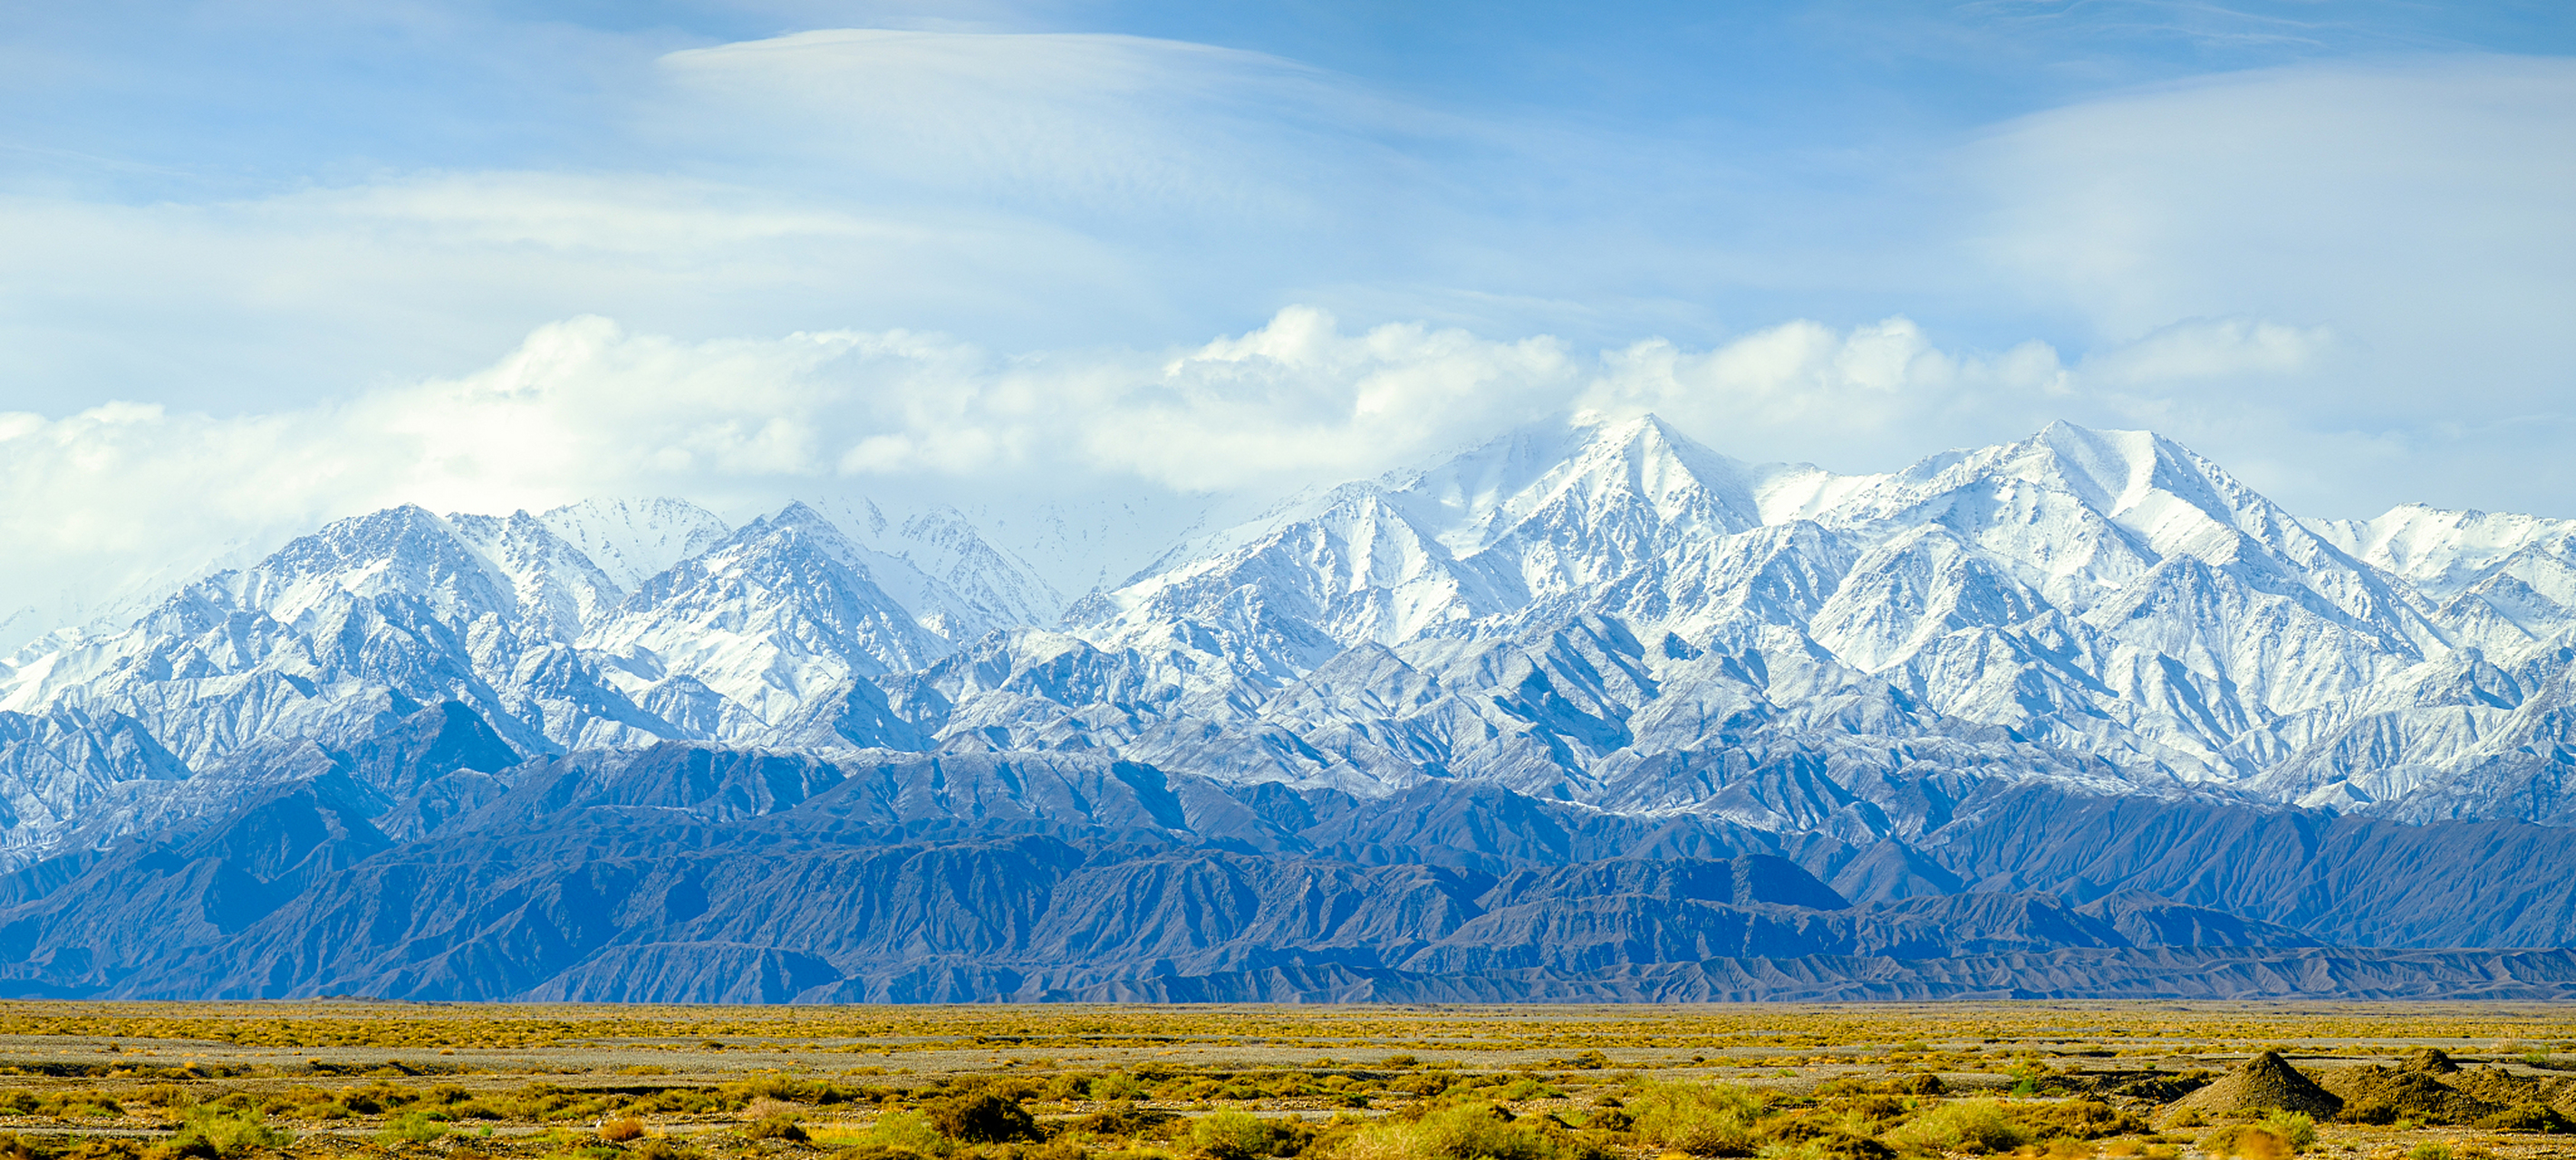 阿尔金山(altai mountains)是世界上最壮丽的山脉之一,位于中亚地区